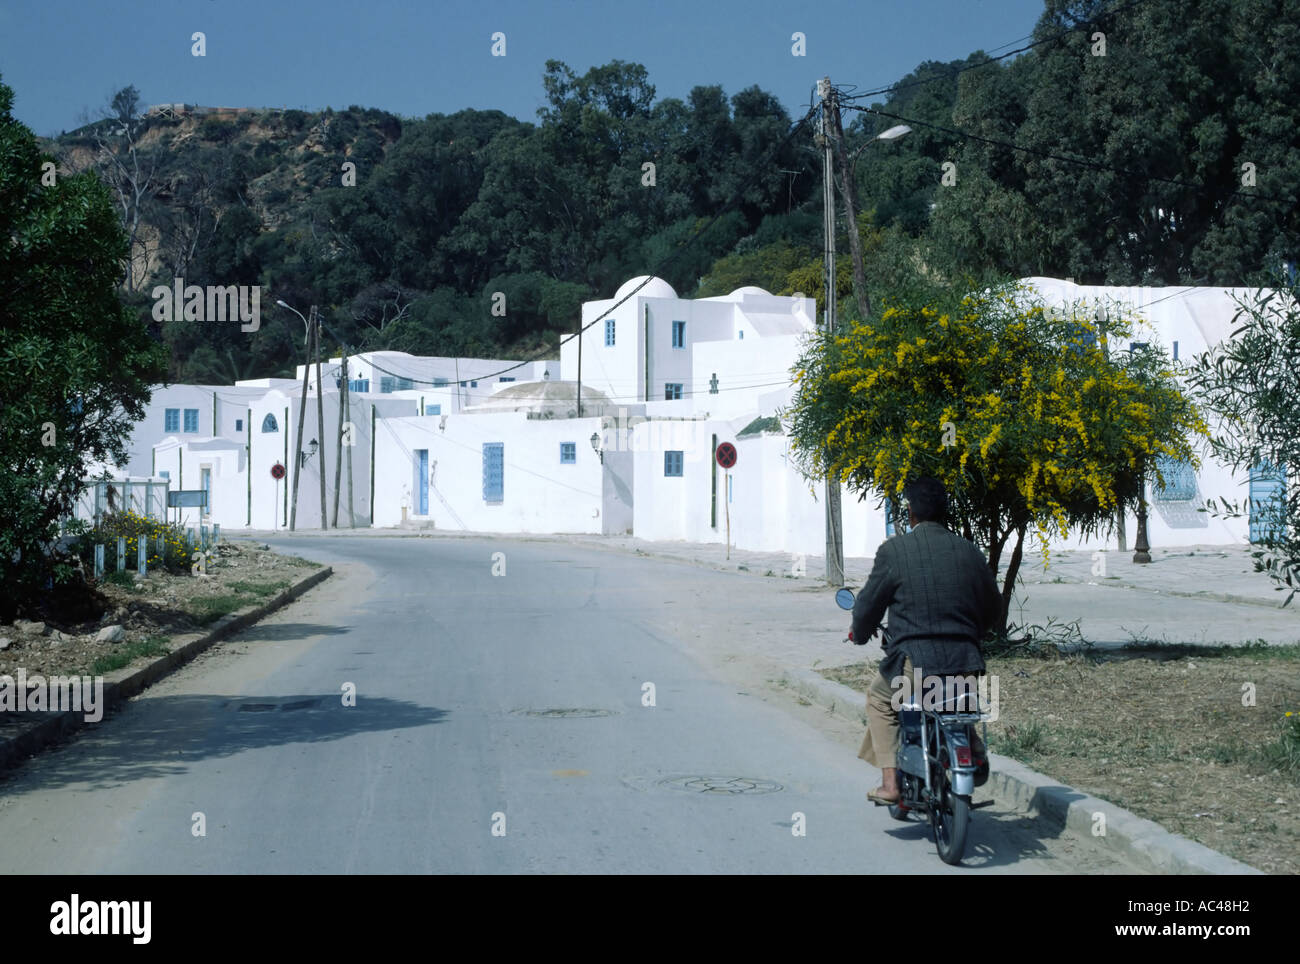 L'homme sur un scooter à Sidi Bou Said, près de Tunis Tunisie Afrique du Nord Banque D'Images